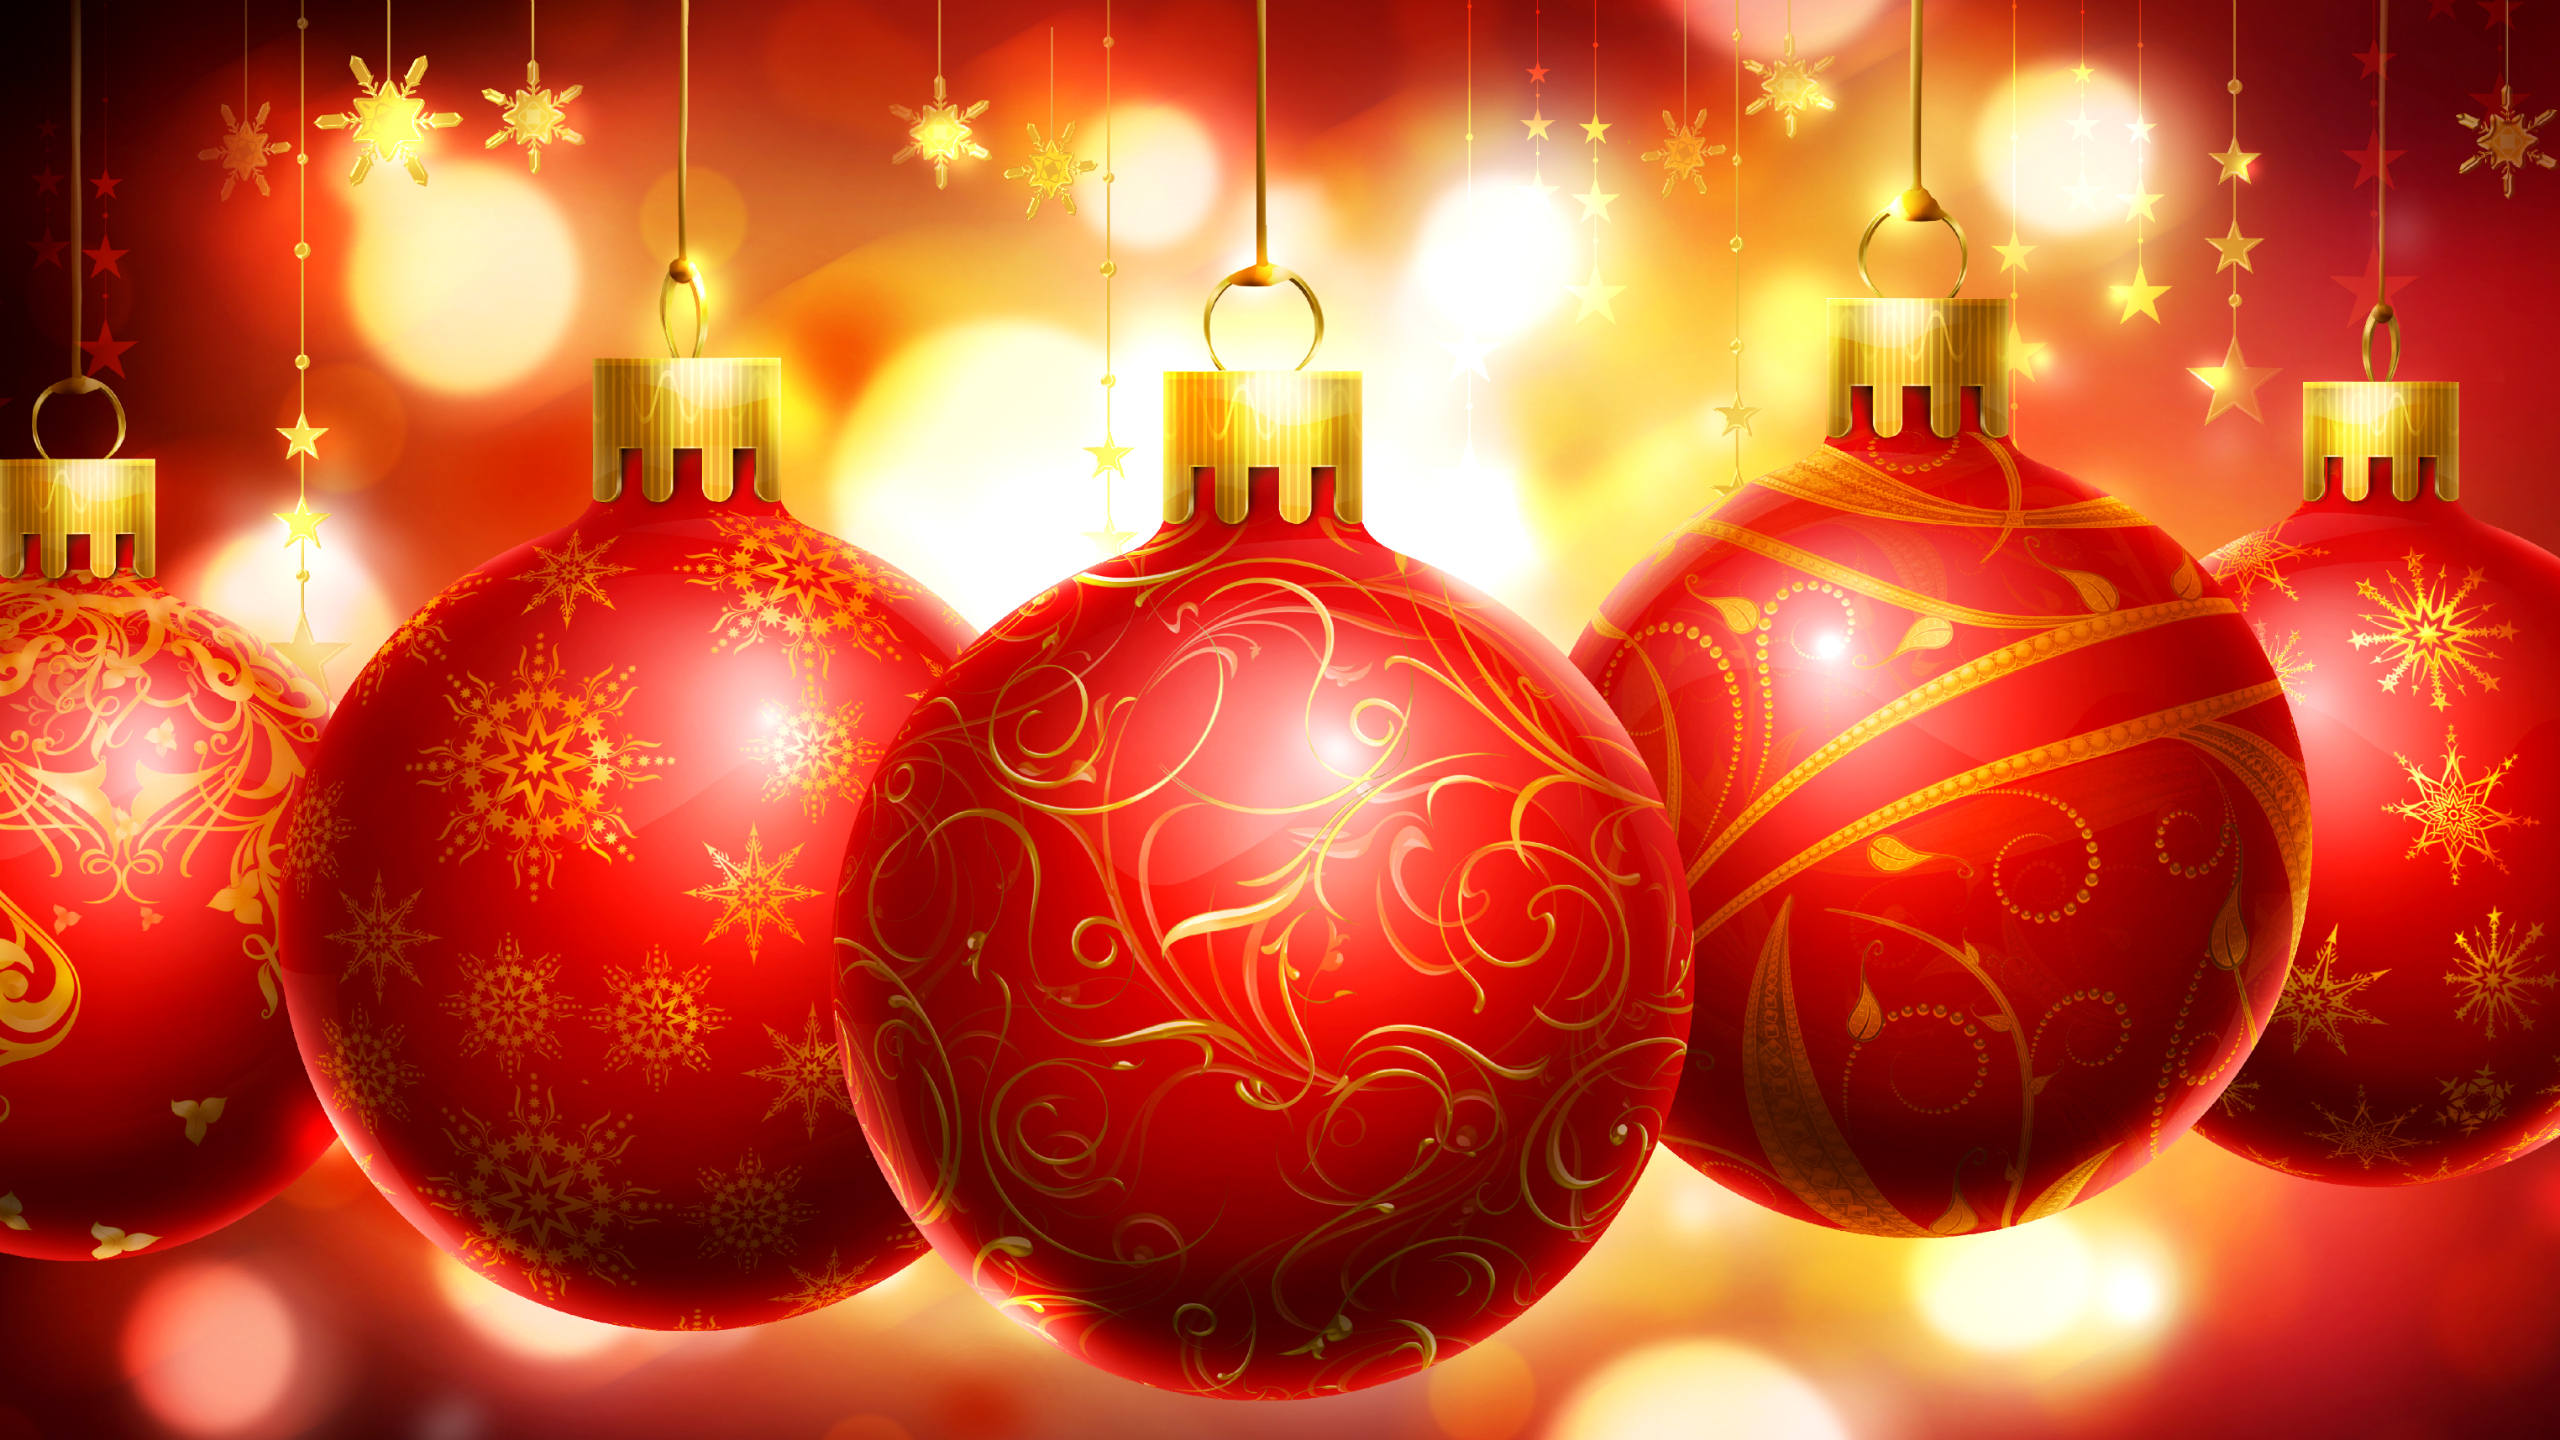 クリスマスの装飾の壁紙,クリスマスオーナメント,クリスマスの飾り,赤,クリスマス,オーナメント